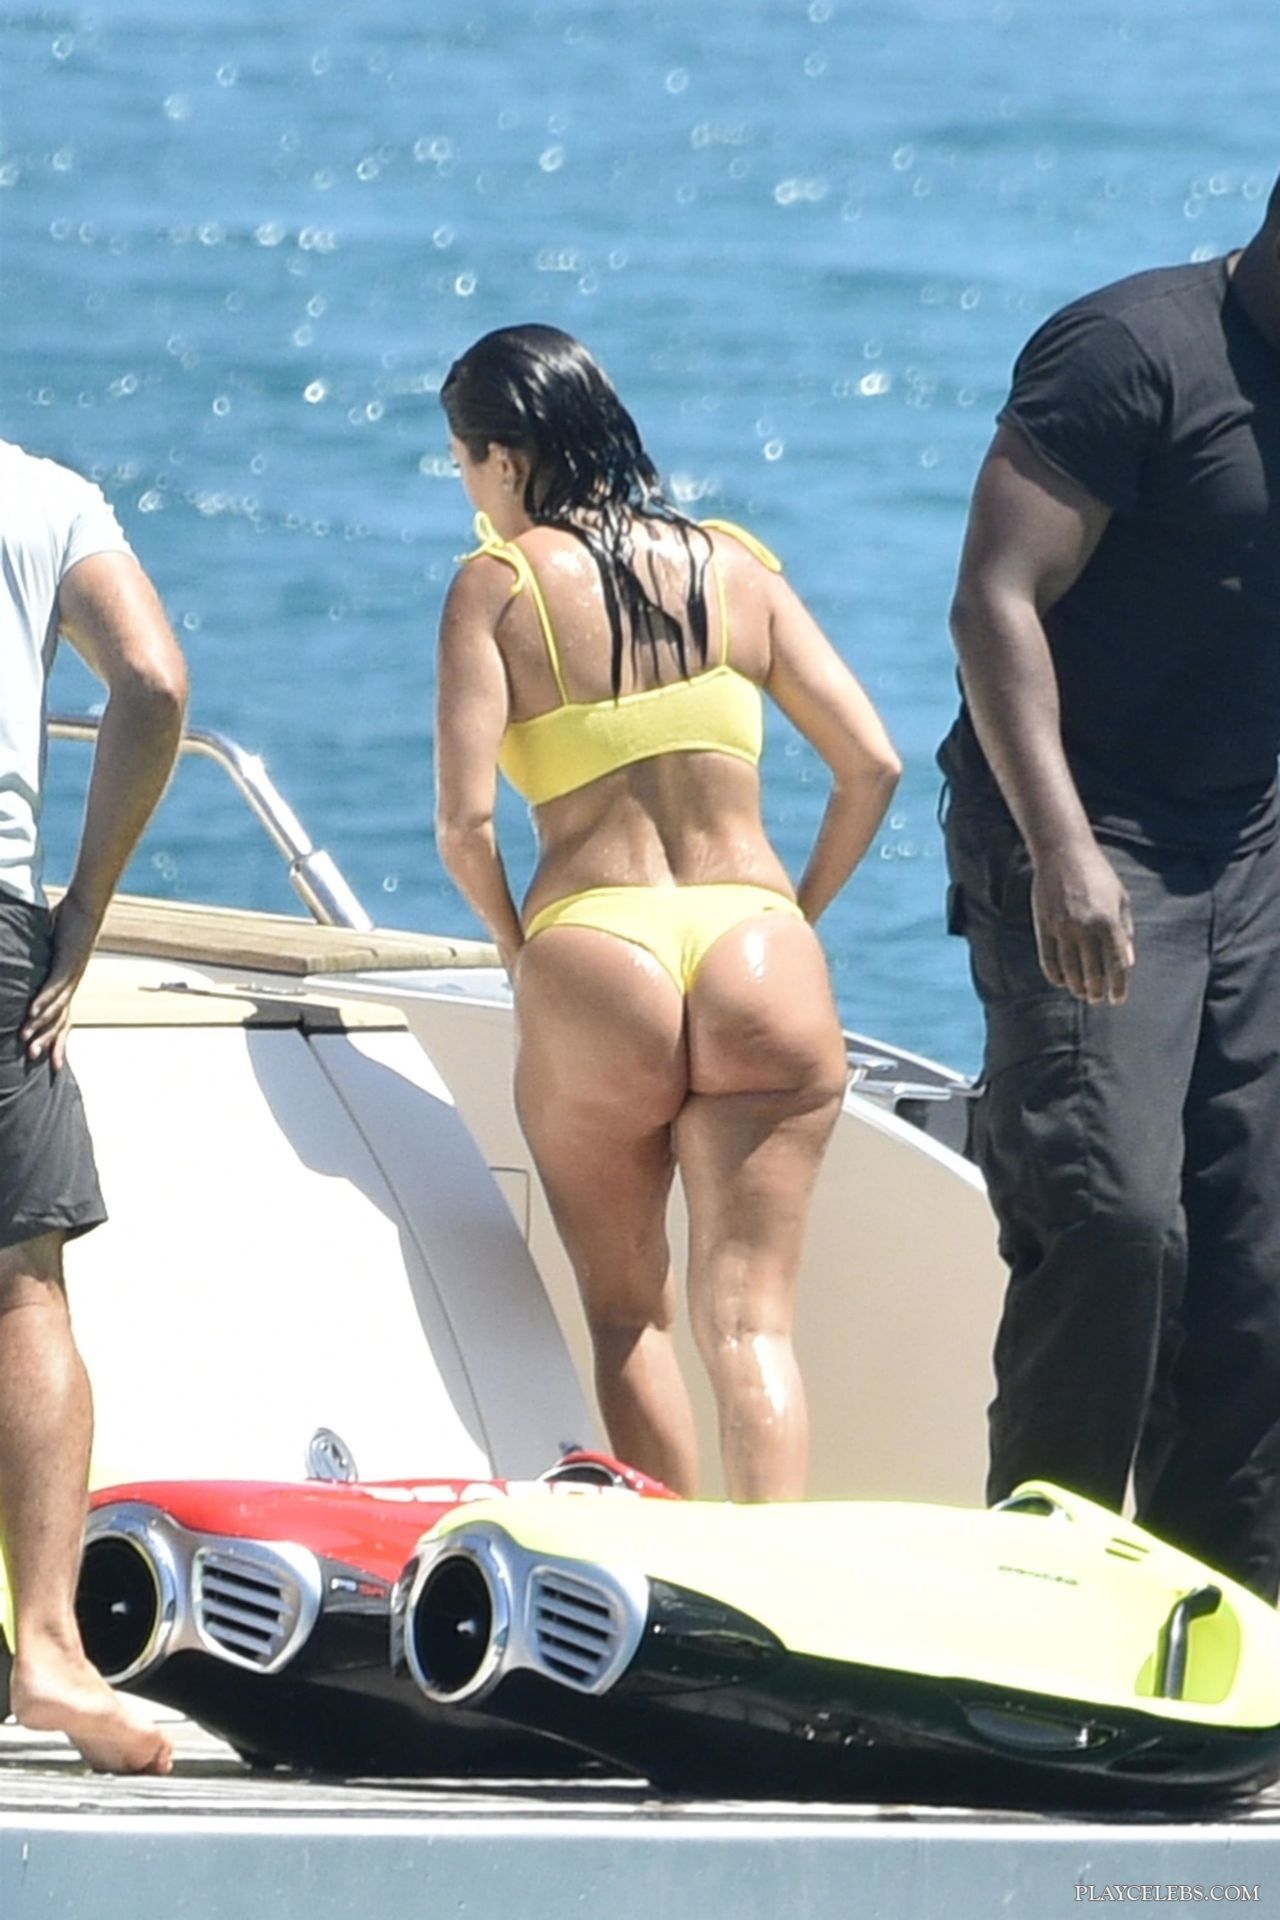 You are currently viewing Kourtney Kardashian Gorgeous Ass In Wet Yellow Bikini